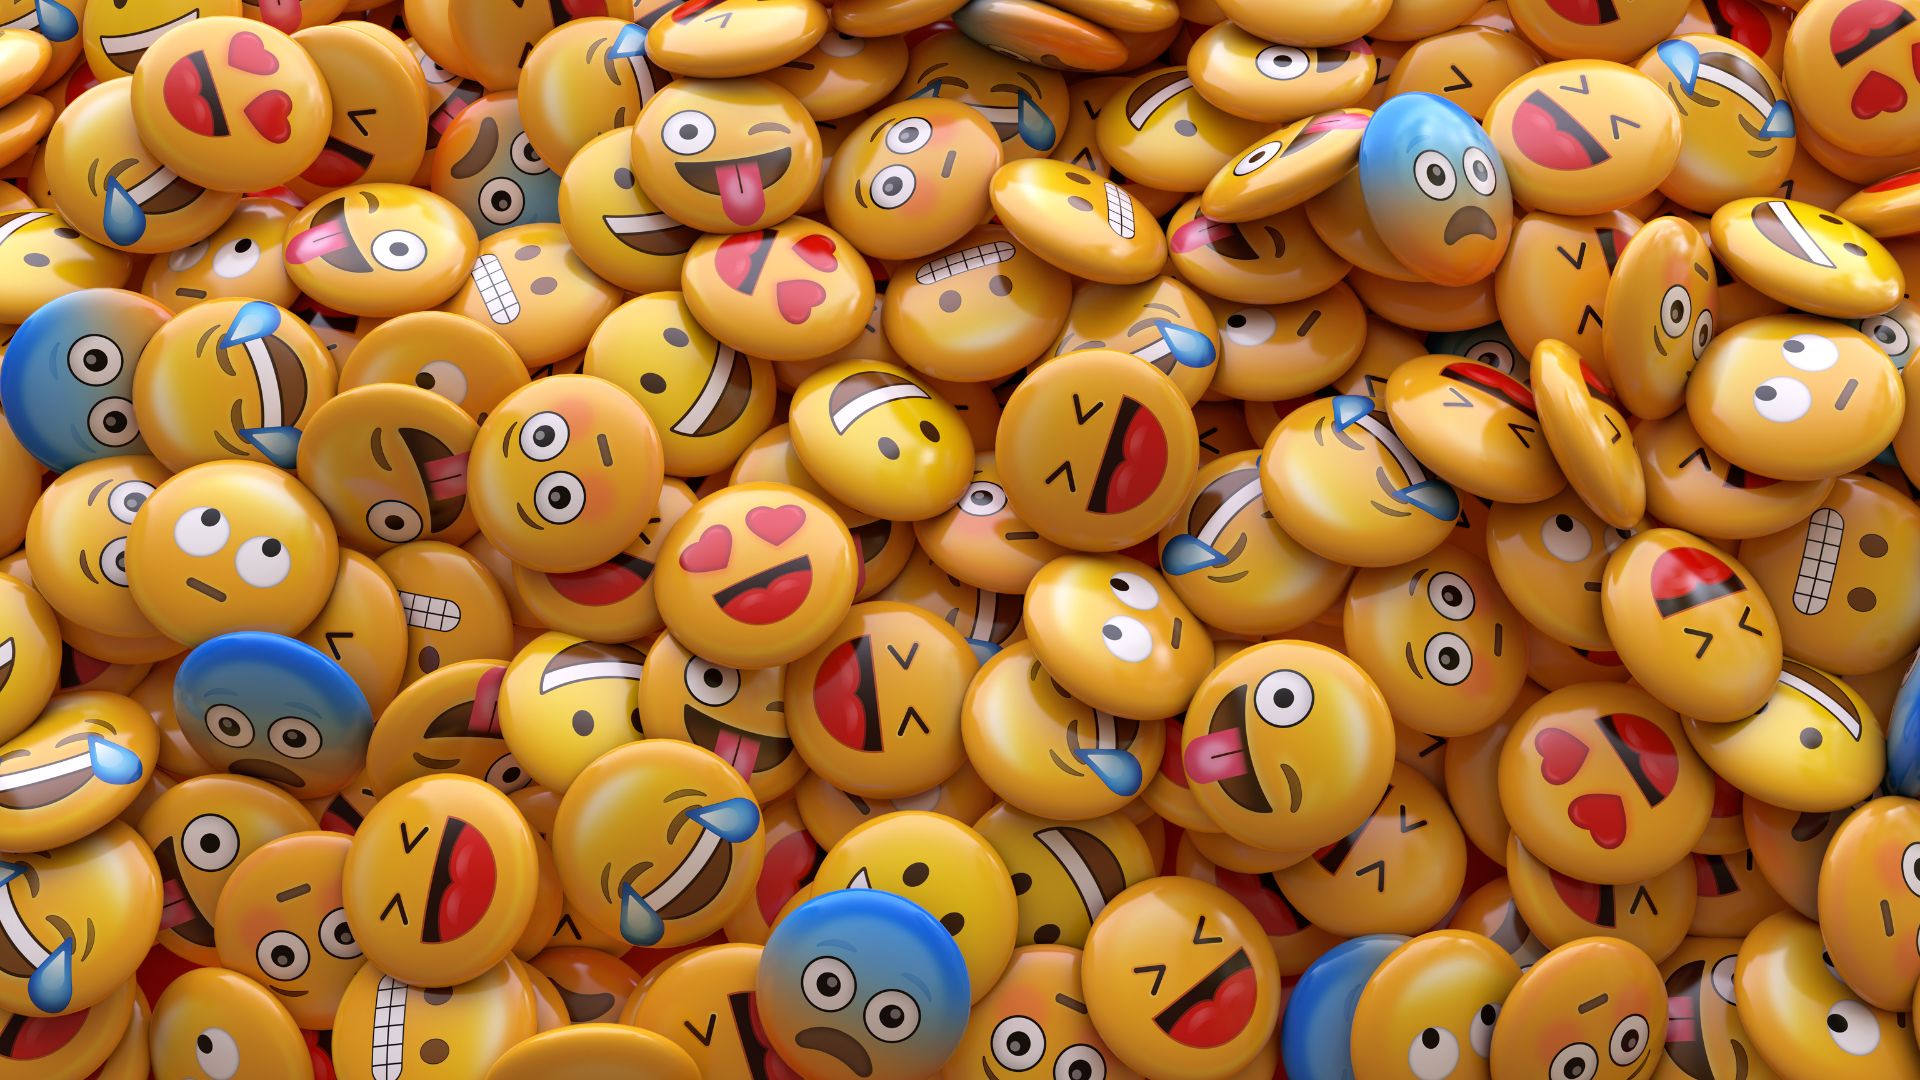 Frases com emoji: use e abuse destas frases divertidas